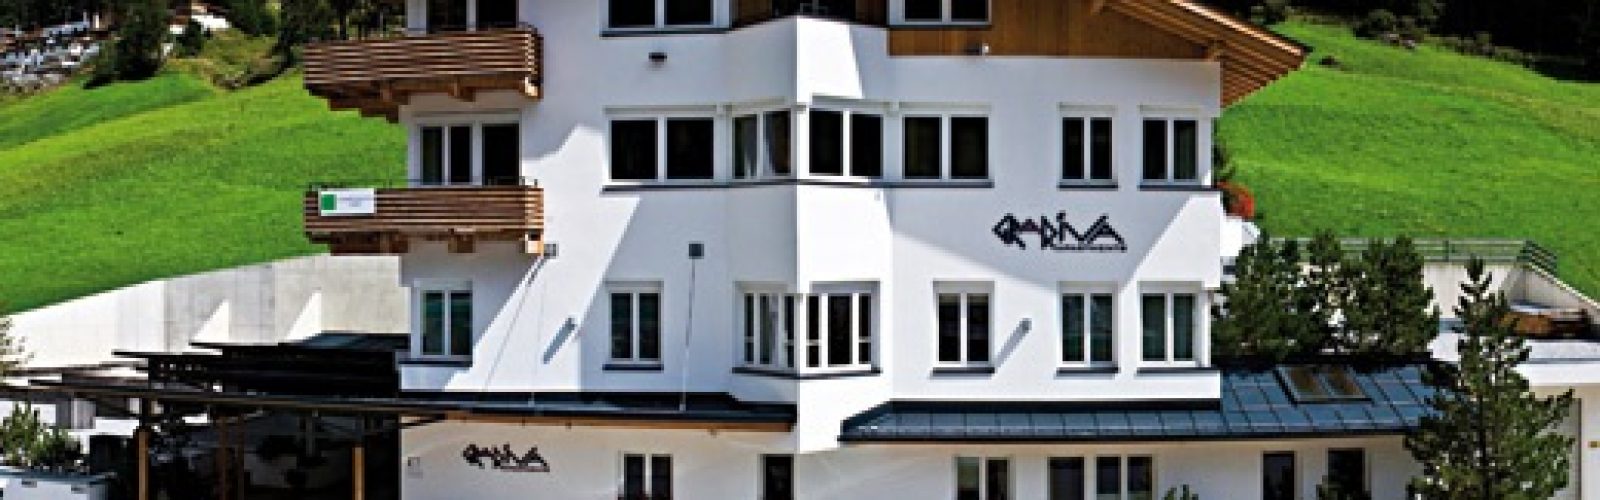 Gradiva Apartments, Ischgl - www.aktivostrig.dk